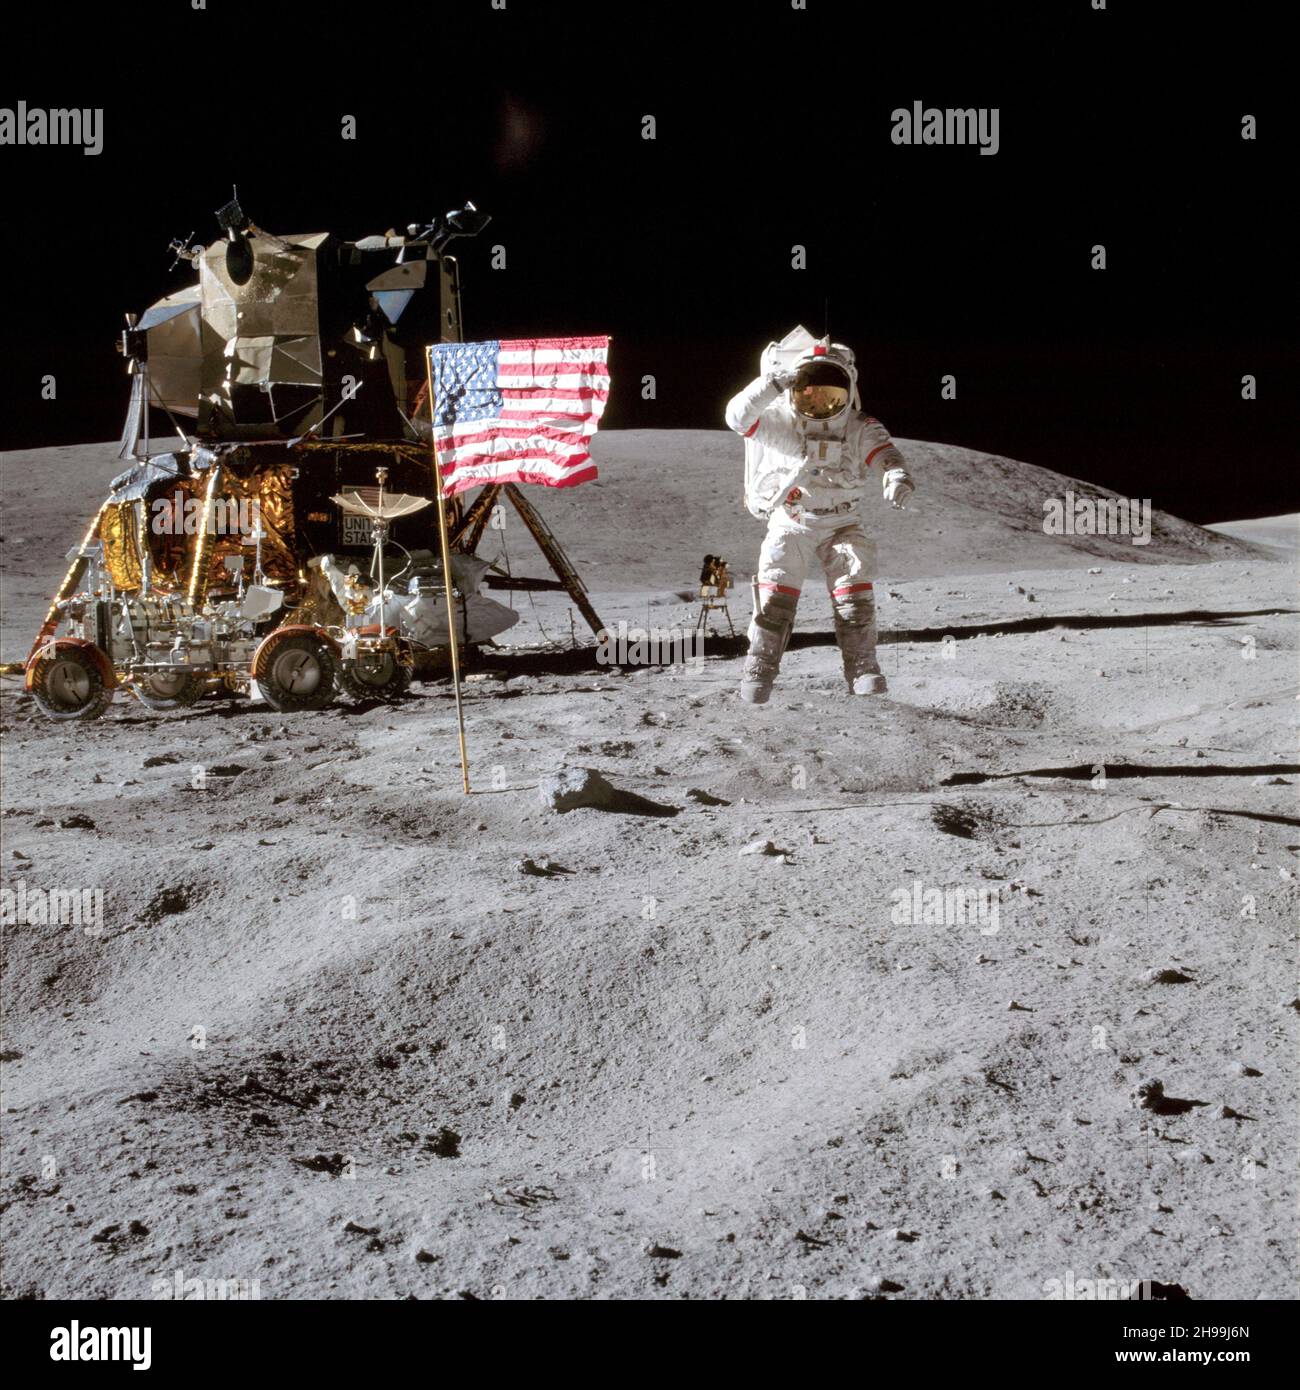 El astronauta John W. Young, comandante de la misión de aterrizaje lunar del Apolo 16, en la superficie lunar mientras saluda la bandera de los Estados Unidos en el lugar de aterrizaje de Descartes durante la primera actividad extrvehicular del Apolo 16 Foto de stock